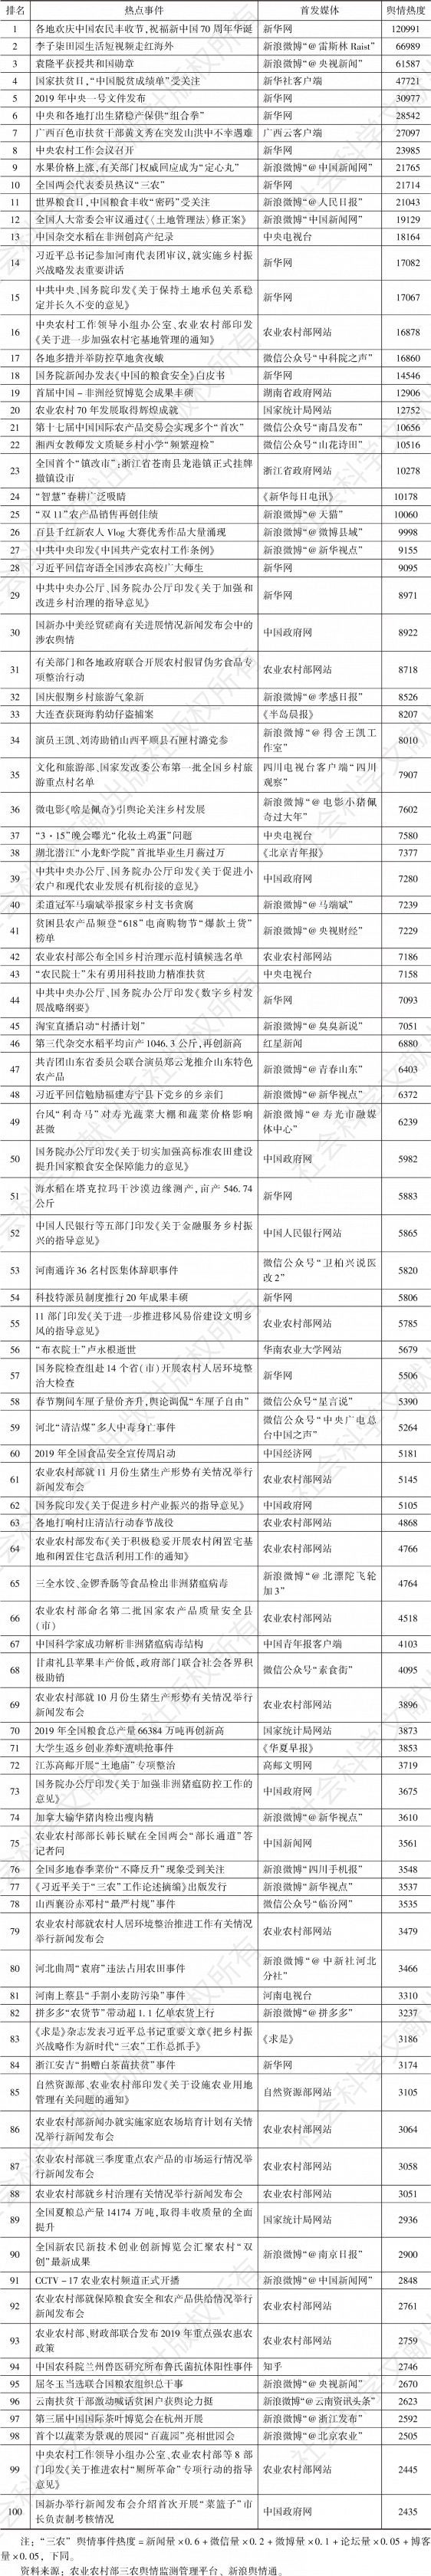 表1 2019年“三农”舆情热点事件TOP 100